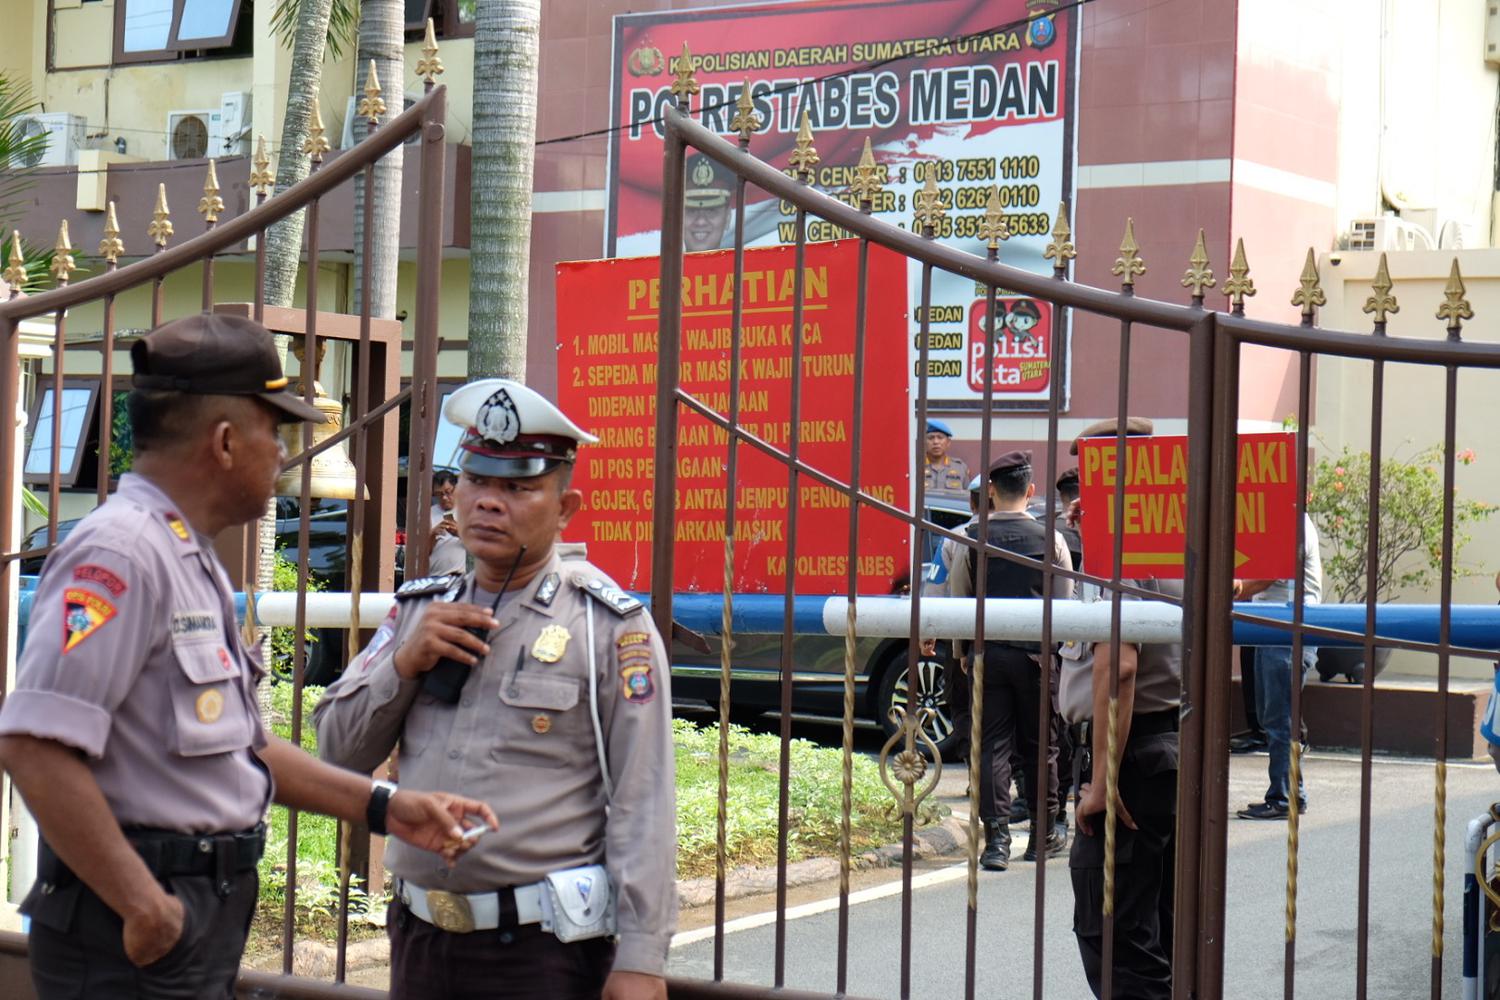 Polisi mengidentifikasi seputar lokasi Polrestabes Medan yang diguncang bom, Rabu (13/11/2019). Identifikasi di dalam Mako Polrestabes Medan hingga sejumlah titik di luarnya.